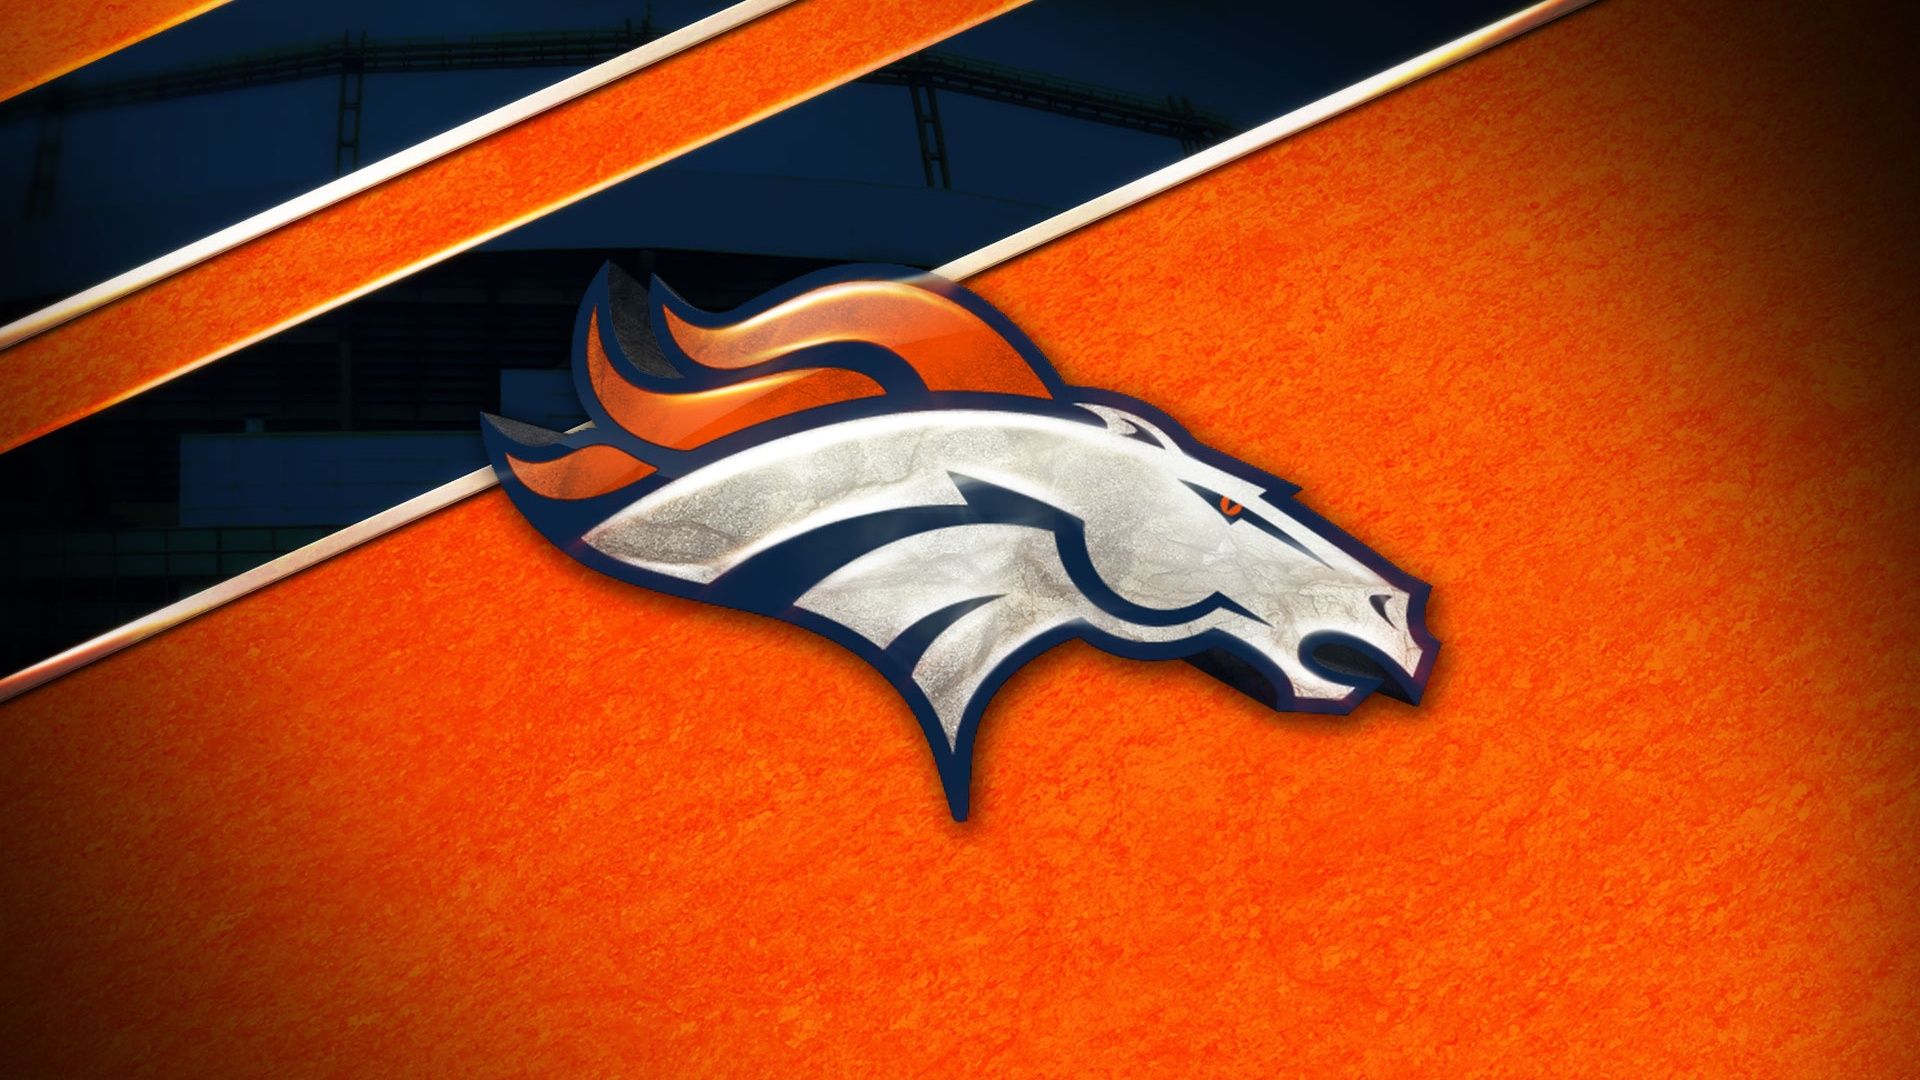 Denver Broncos Wallpapers - Top 25 Best Denver Broncos Wallpapers Download